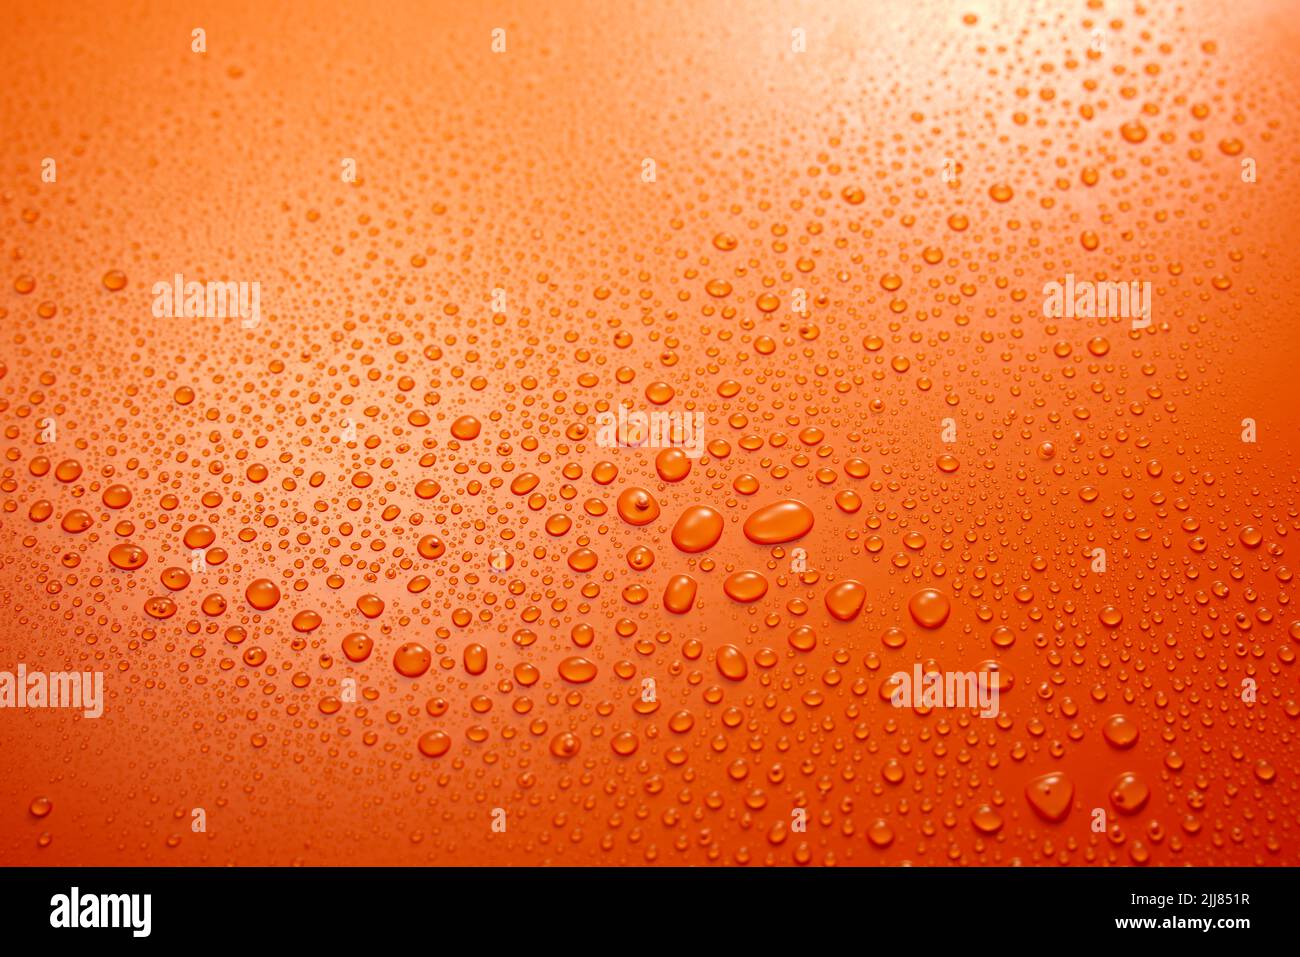 Cadre complet d'un fond orange transparent humide avec condensation et petites gouttes d'eau rondes claires qui s'écoulent dans la pièce lumineuse Banque D'Images